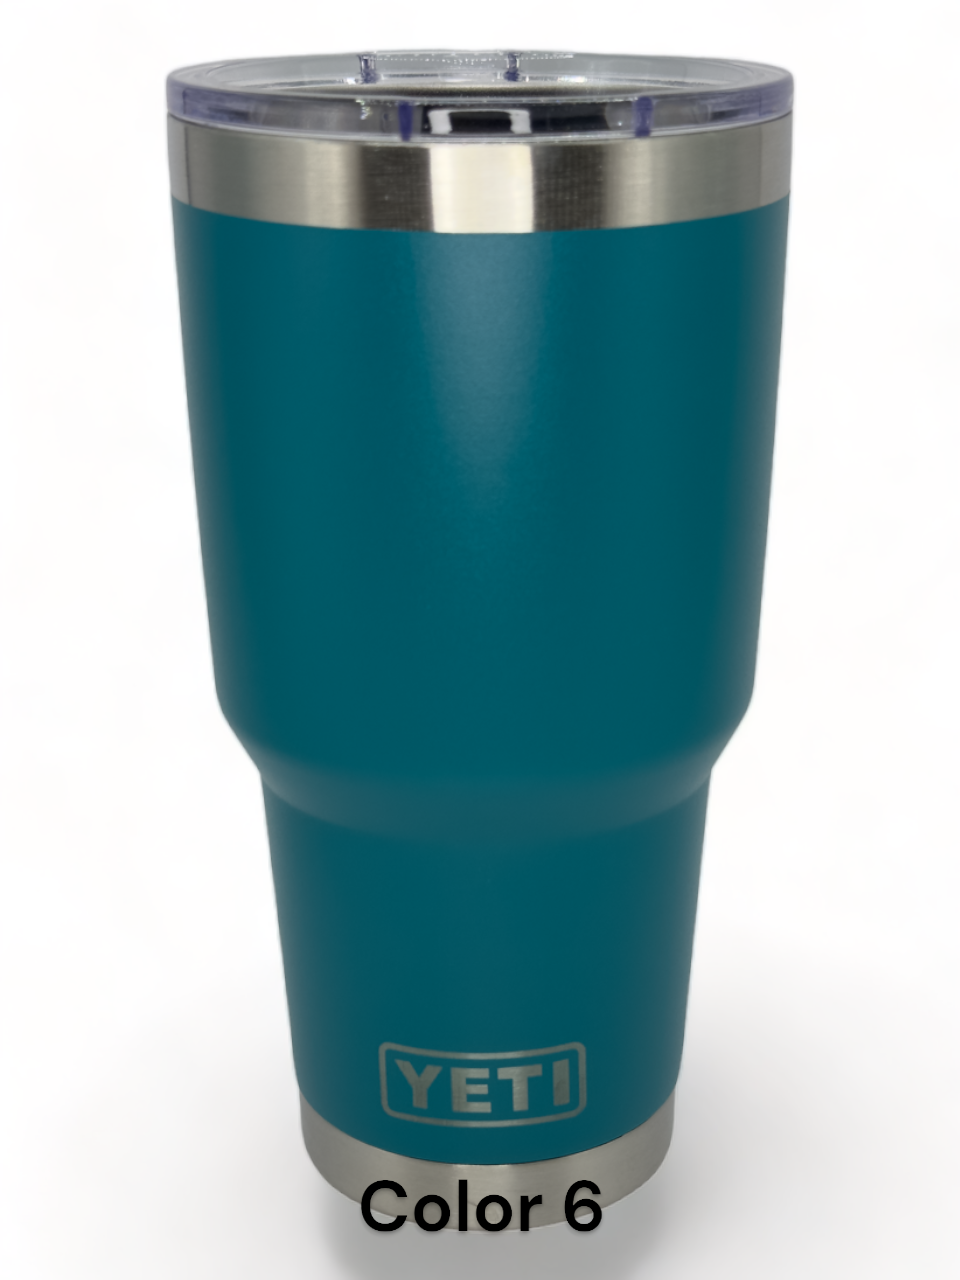 Plattsmouth Blue Devils - Logo only - Yeti Style